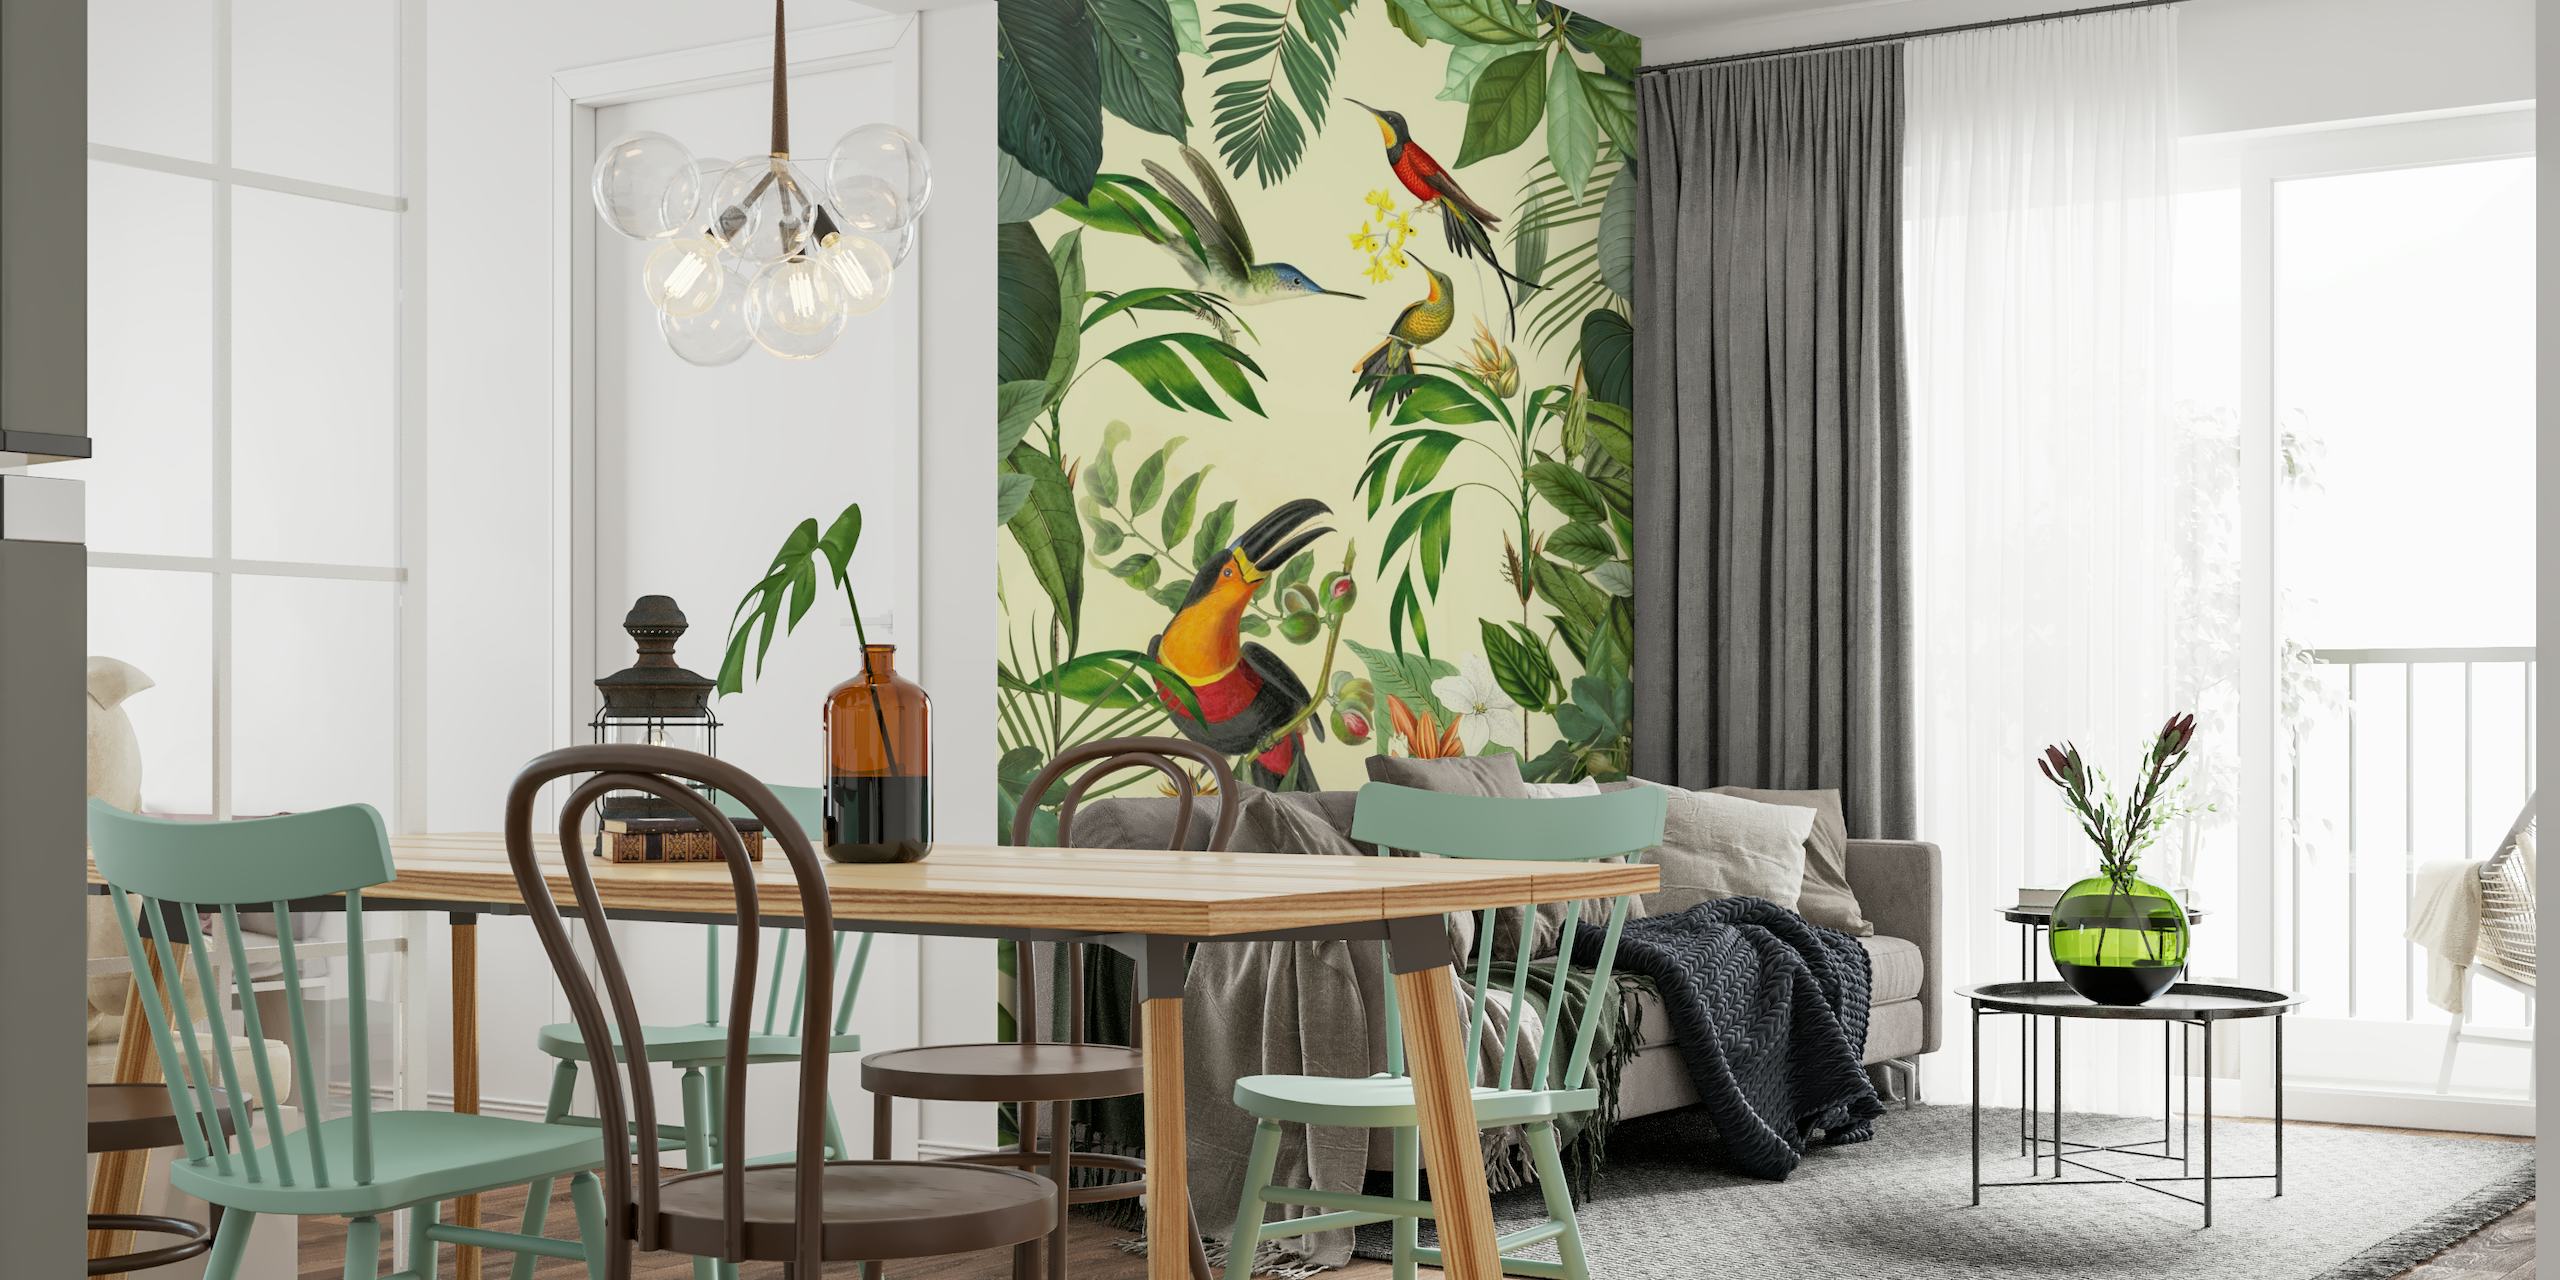 Vægmaleri med tropiske tukaner og kolibrier, der viser et pulserende dyreliv og frodige grønne områder